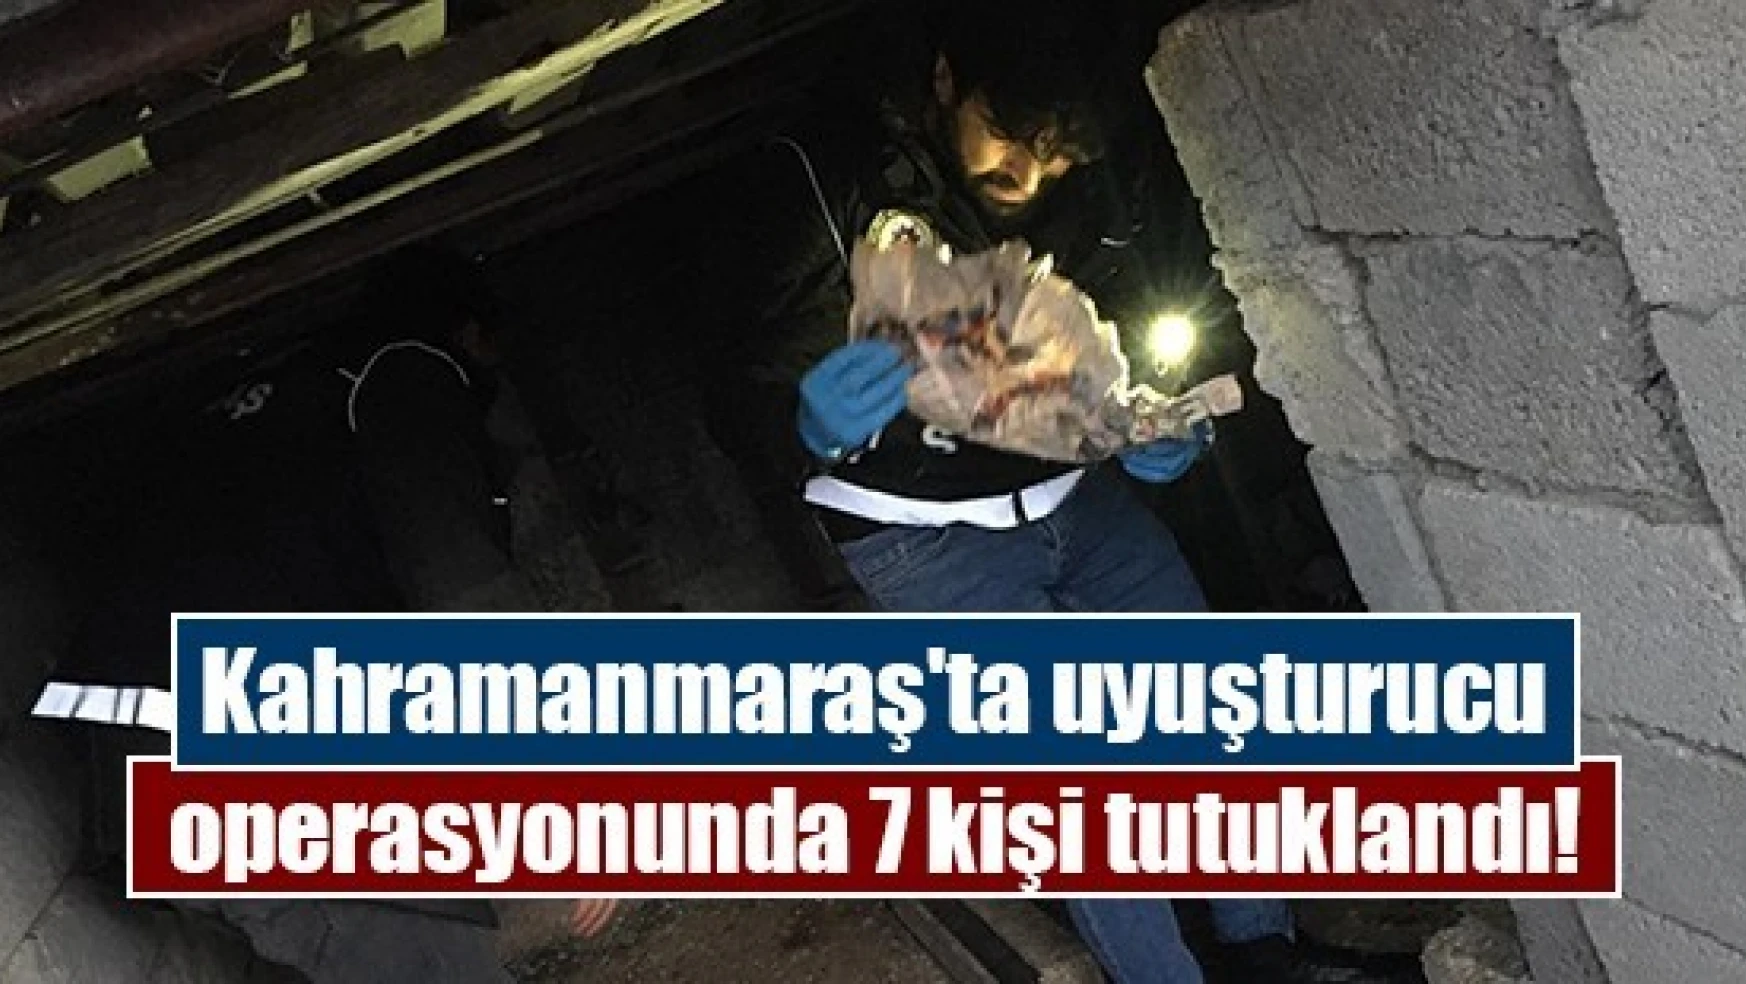 Kahramanmaraş'ta uyuşturucu operasyonunda 7 kişi tutuklandı!